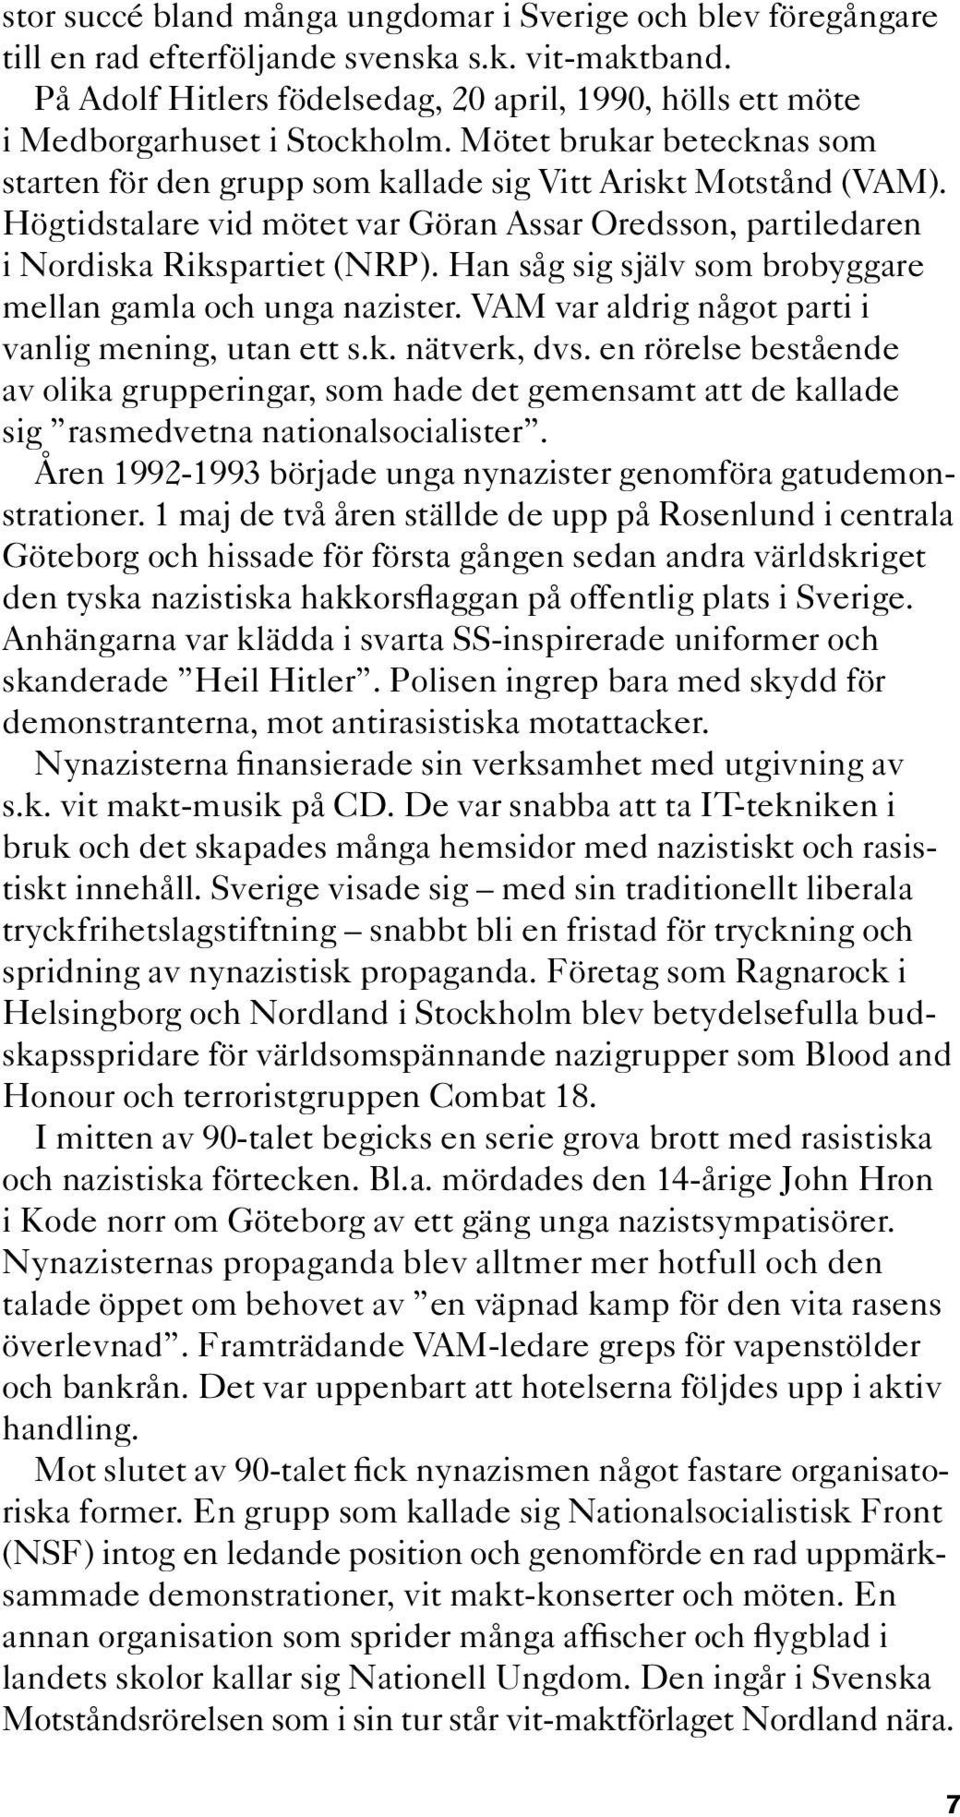 Högtidstalare vid mötet var Göran Assar Oredsson, partiledaren i Nordiska Rikspartiet (NRP). Han såg sig själv som brobyggare mellan gamla och unga nazister.